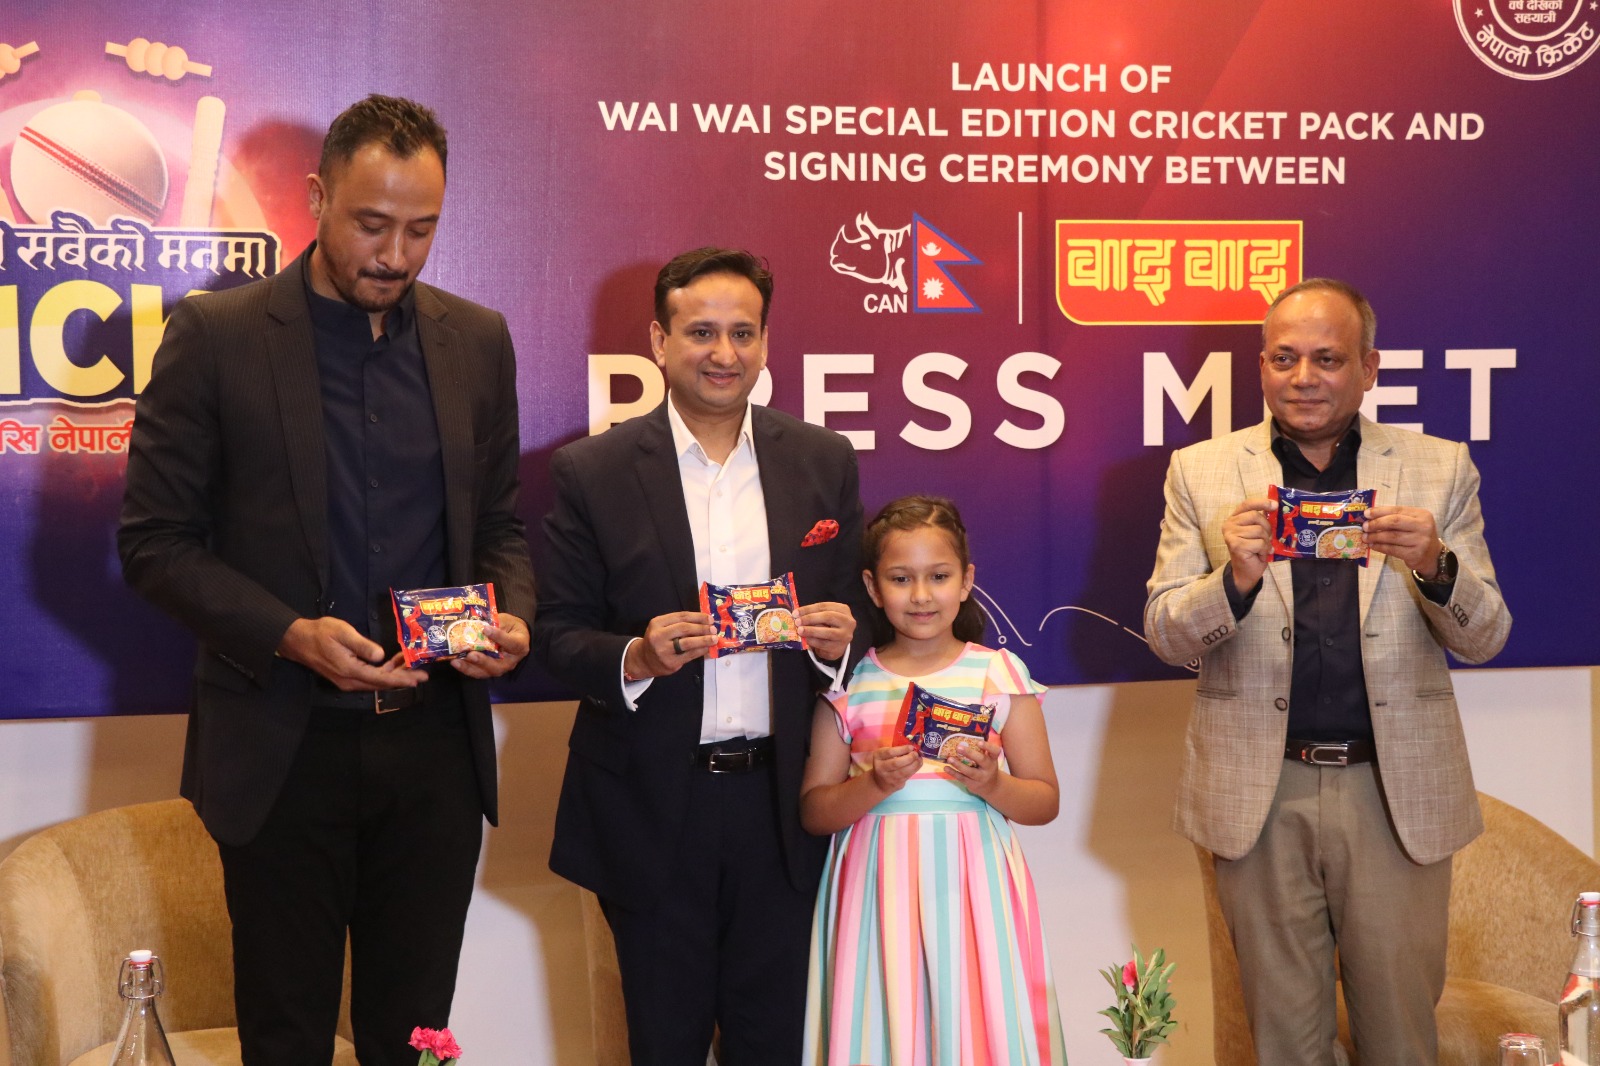 वाइ वाइले ल्यायो ‘क्रिकेट स्पेसल एडिसन प्याकेट’, क्यानलाई ६० लाख रुपैयाँ सहयोग